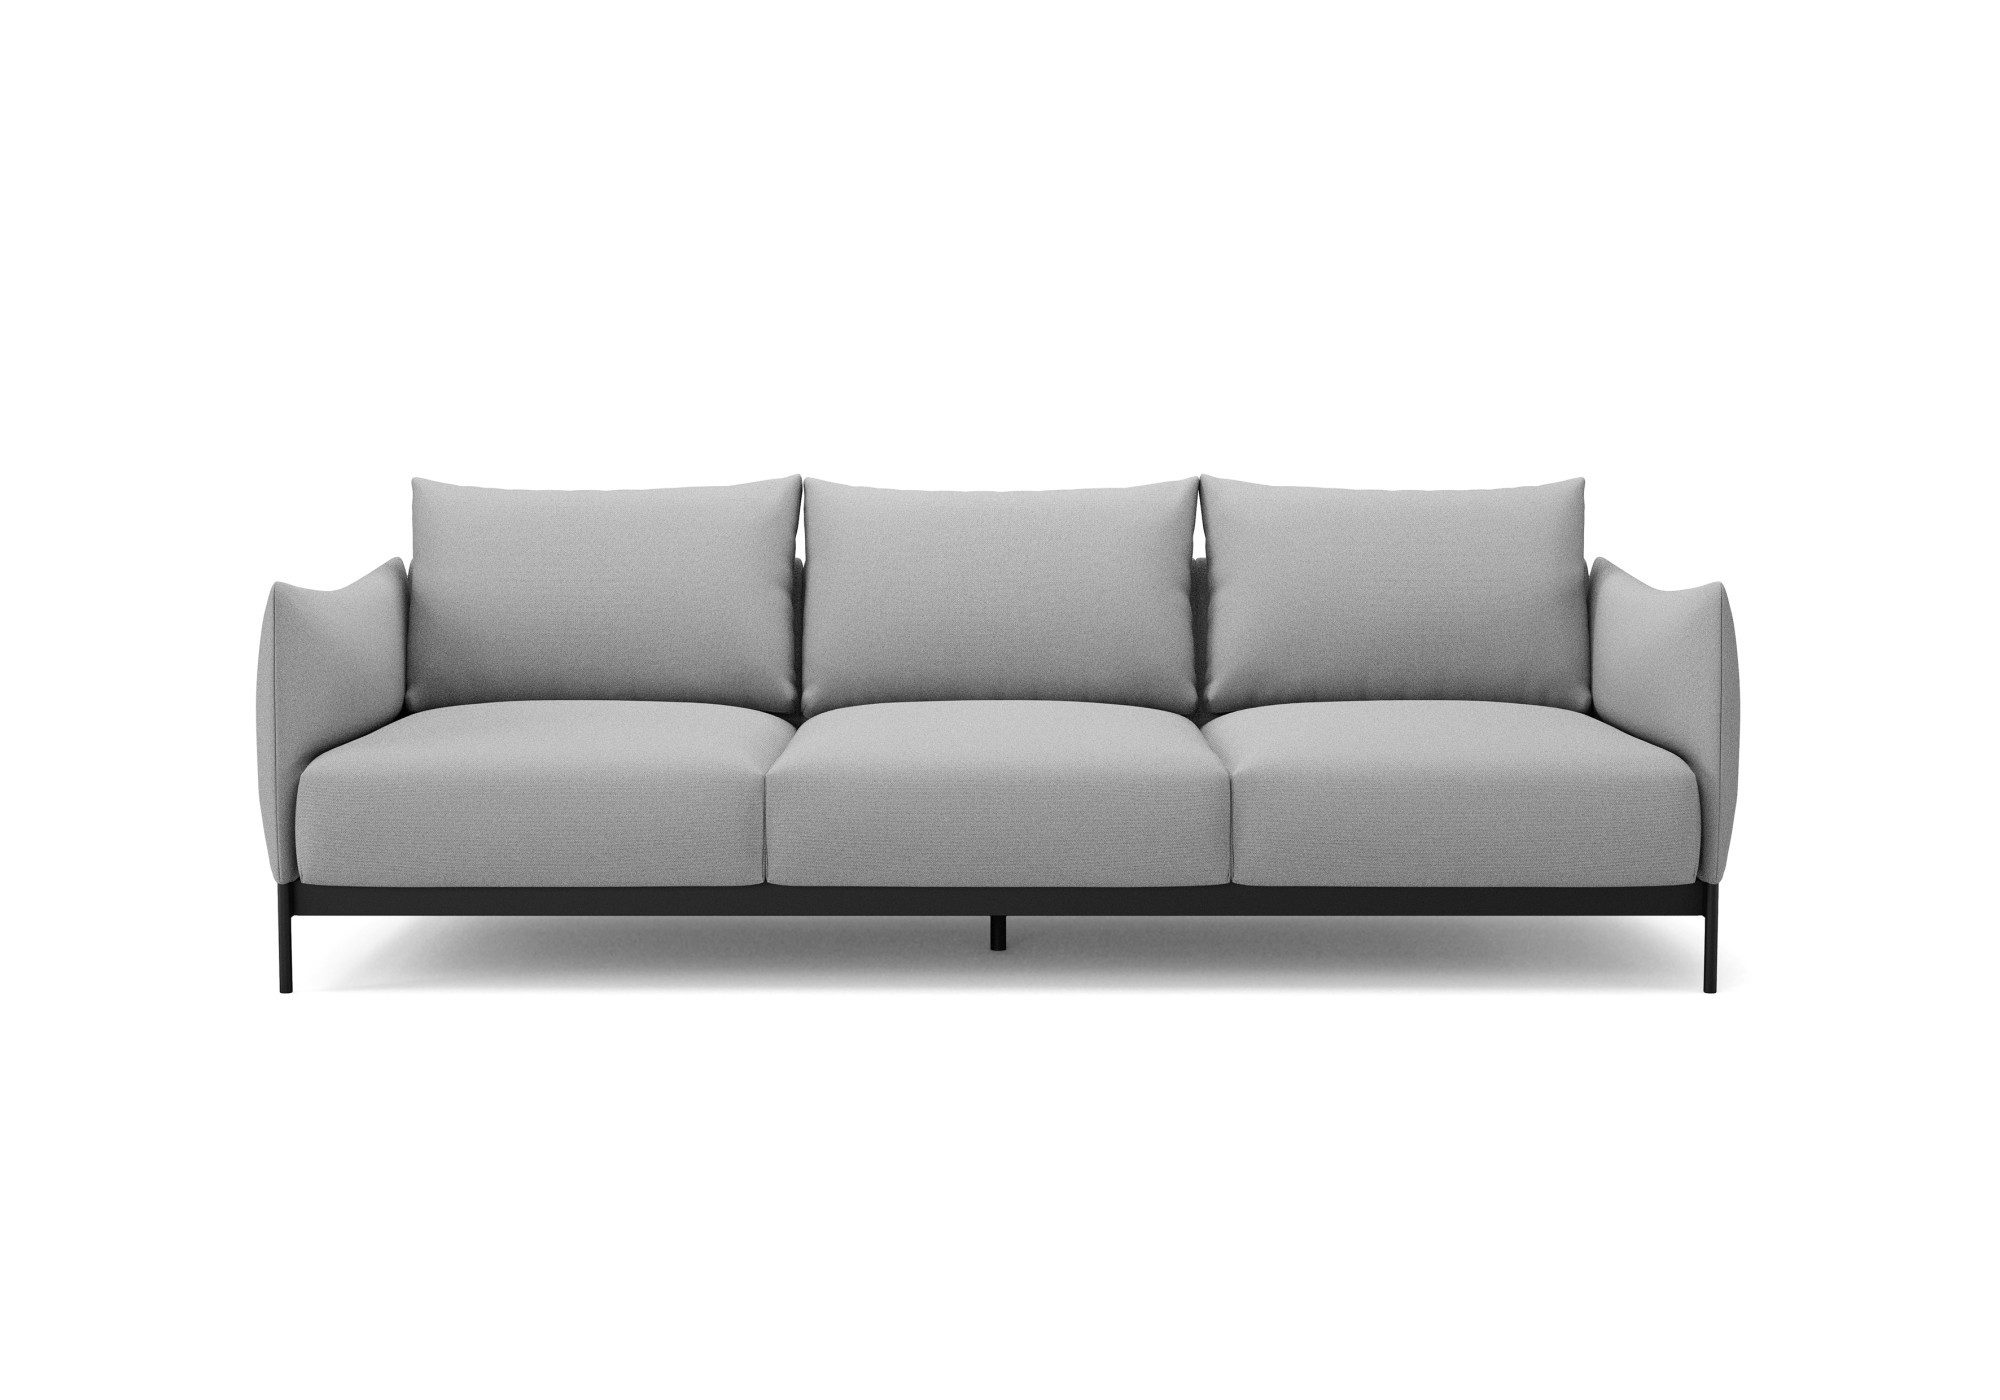 INNOVATION LIVING ™ 3-Sitzer Kayto Sofa, TV-Couch, Dreisitzer, Bezüge wechselbar, Teile einzeln erhältlich, robuste Unterkonstruktion